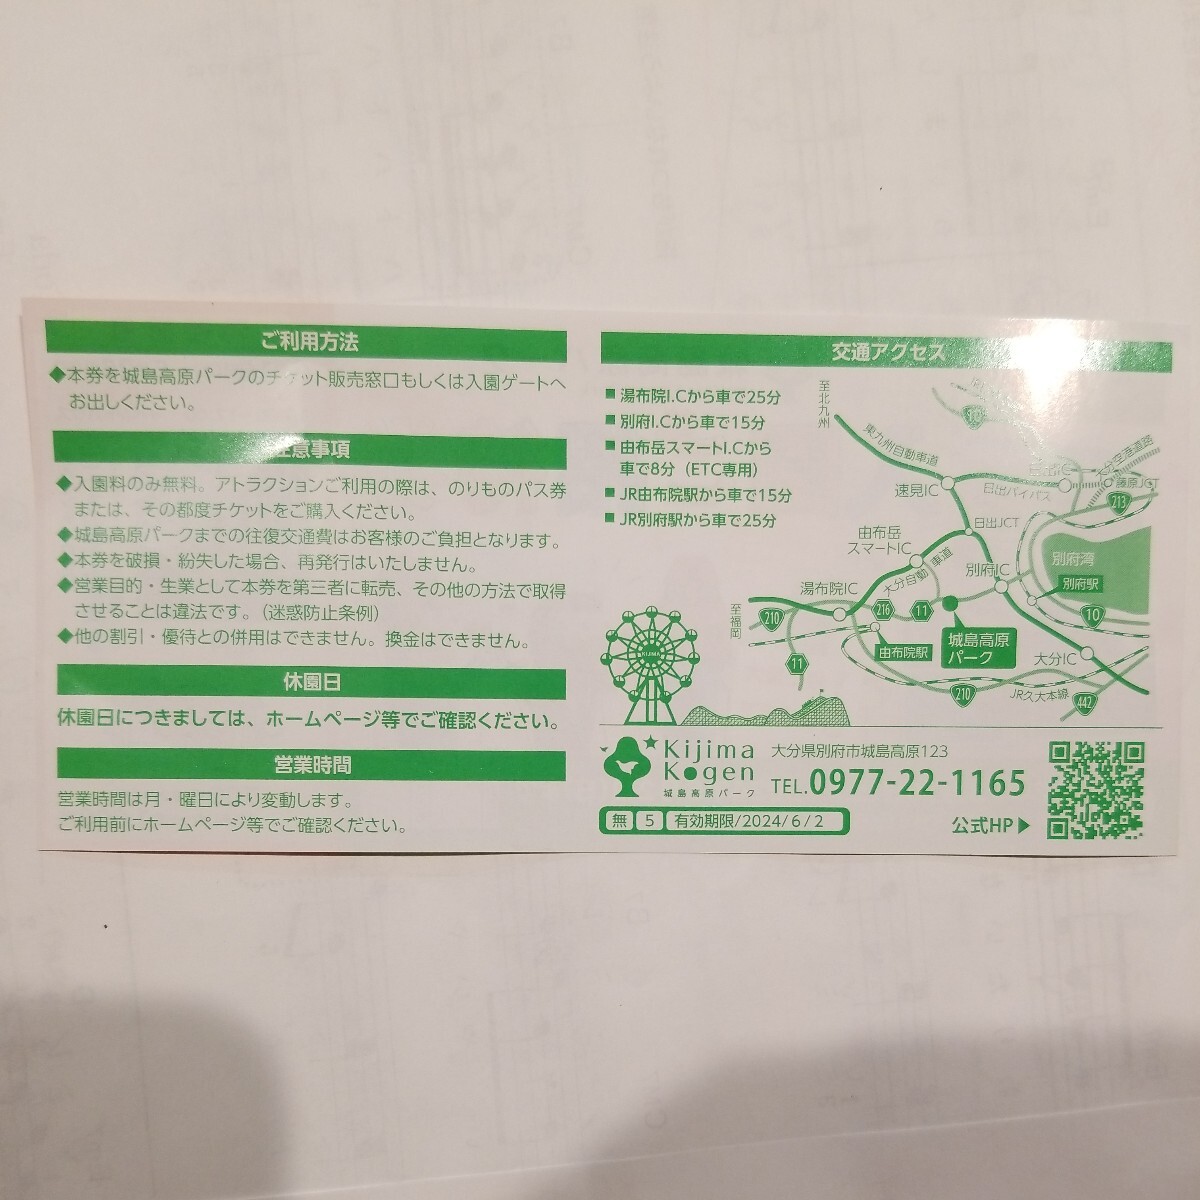 城島高原パーク　入園無料券　最高5名様まで無料で入れます。_画像2